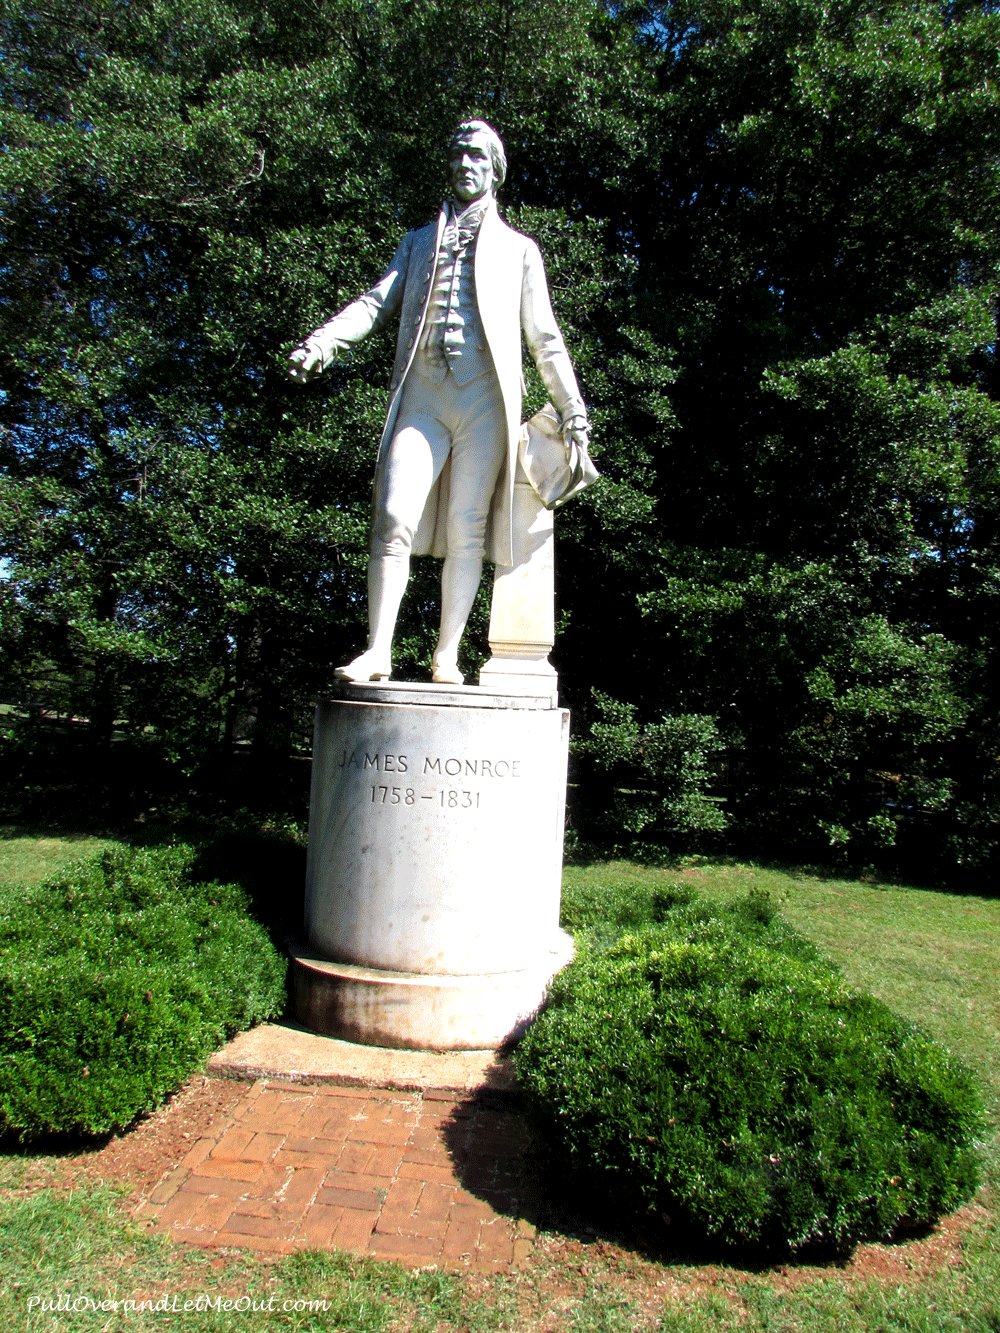 Monroe-statue